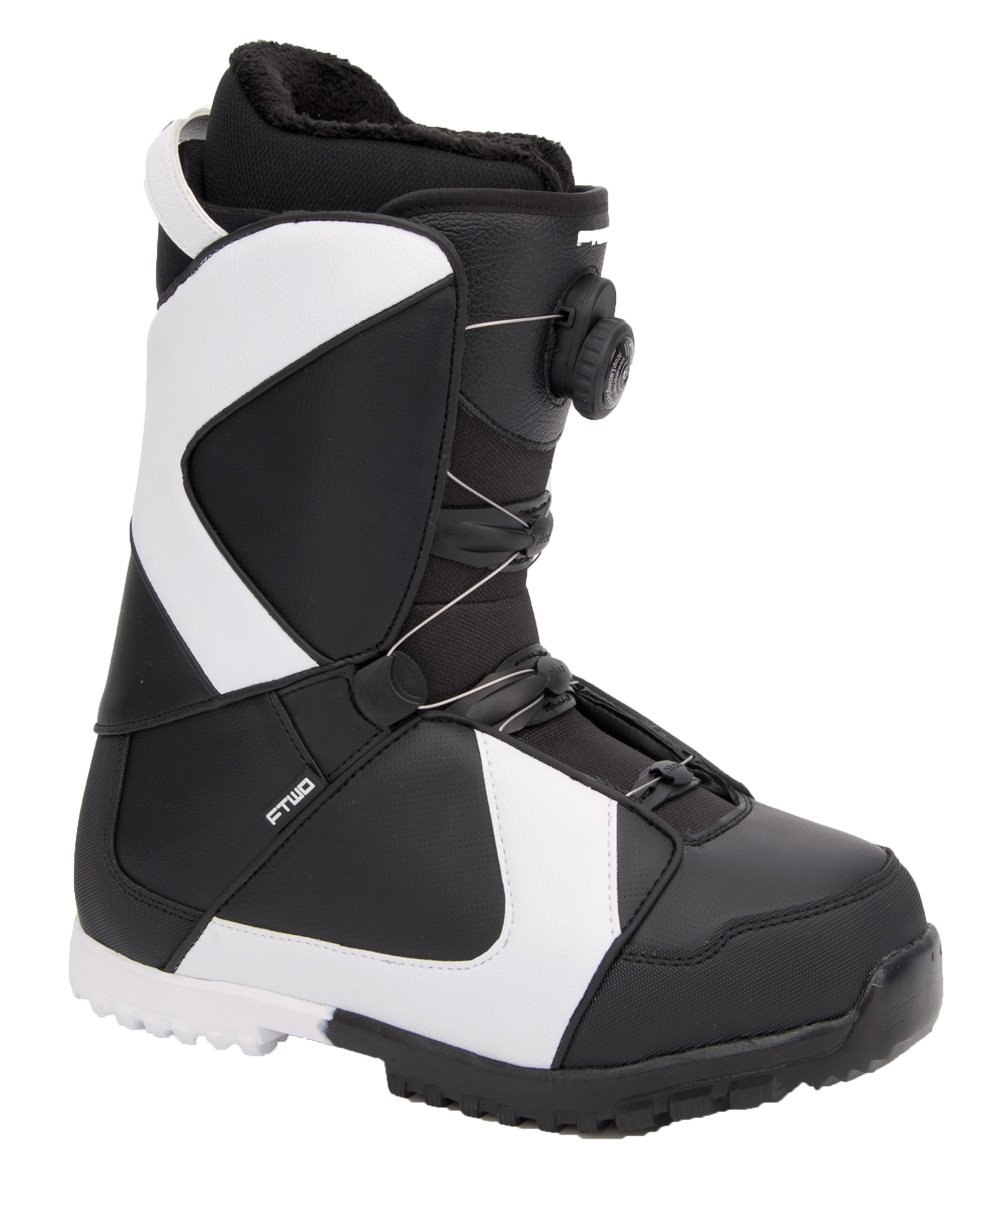 Ботинки сноубордические F2 Air размер 31,0 black/black